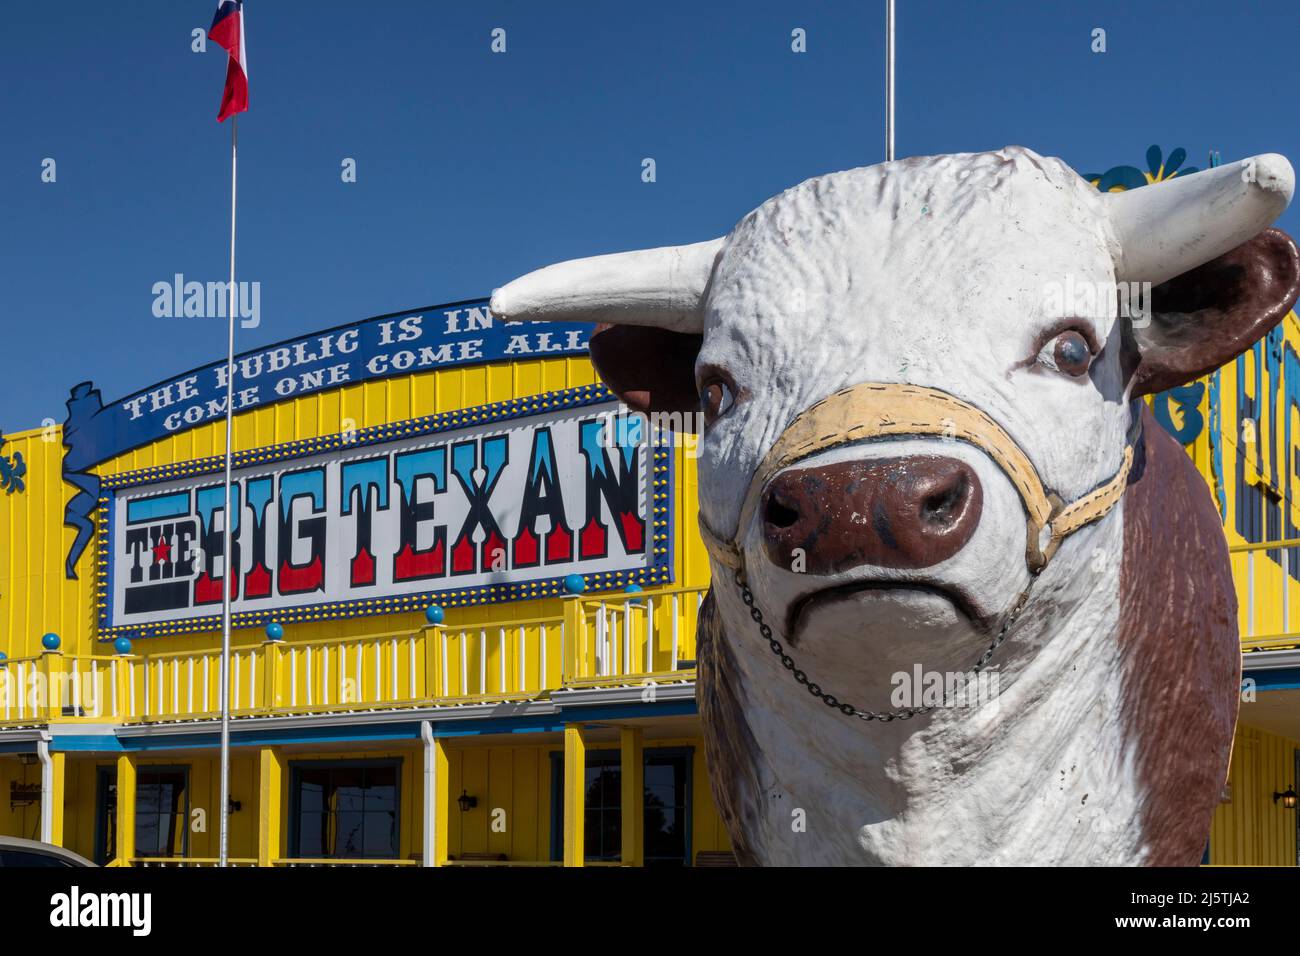 Amarillo, Texas - il Big Texan Steak Ranch. Il ristorante offre una bistecca da 72 once gratuita per i clienti che possono mangiare tutto, compresi i contorni, wii Foto Stock